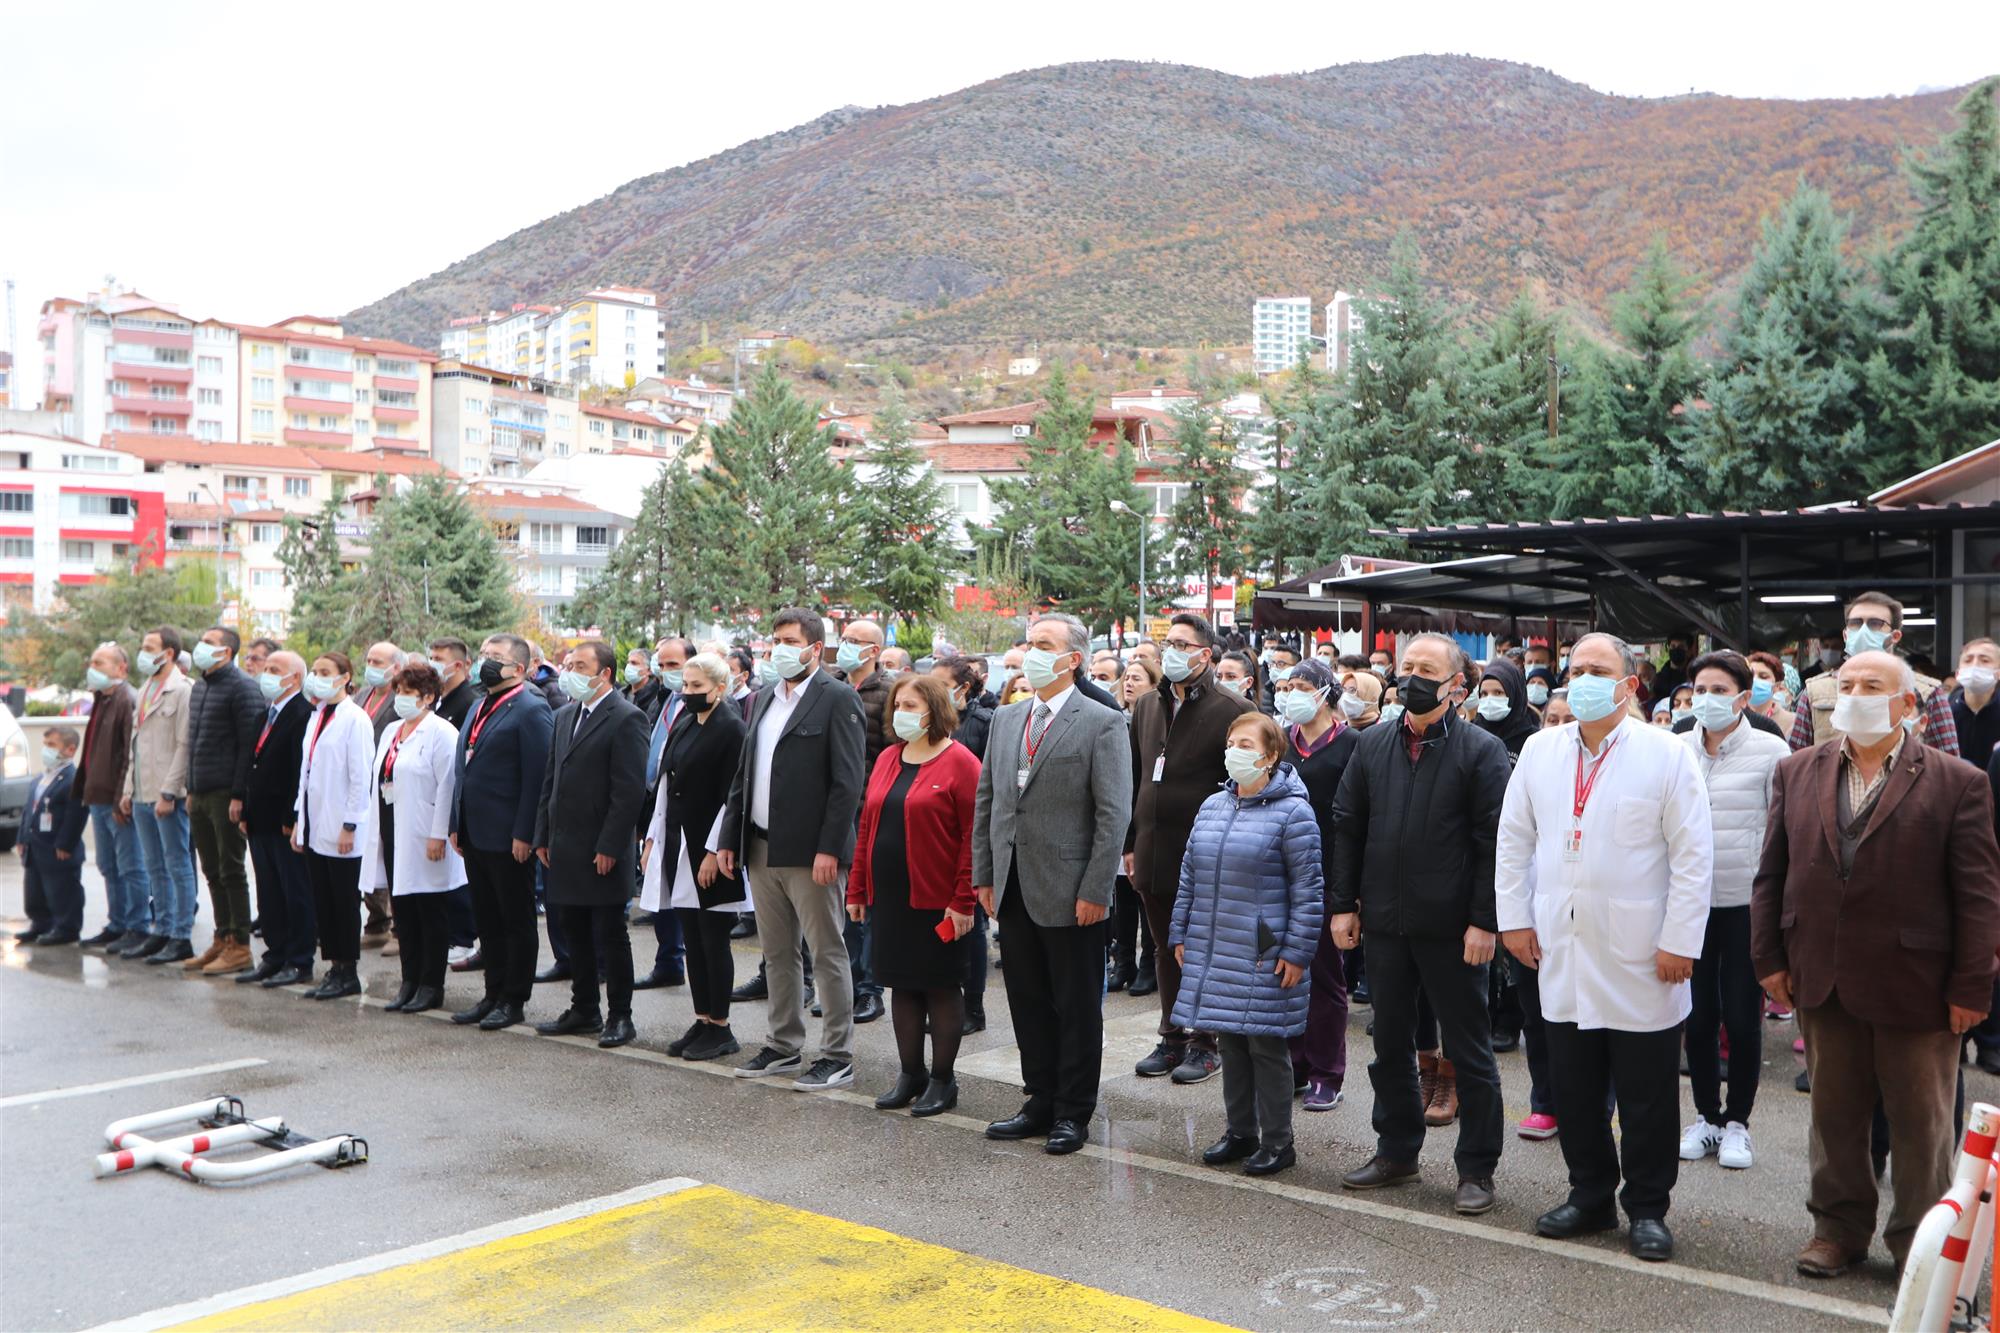 Hastanemizde 10 Kasım Atatürk'ü anma töreni gerçekleştirildi.